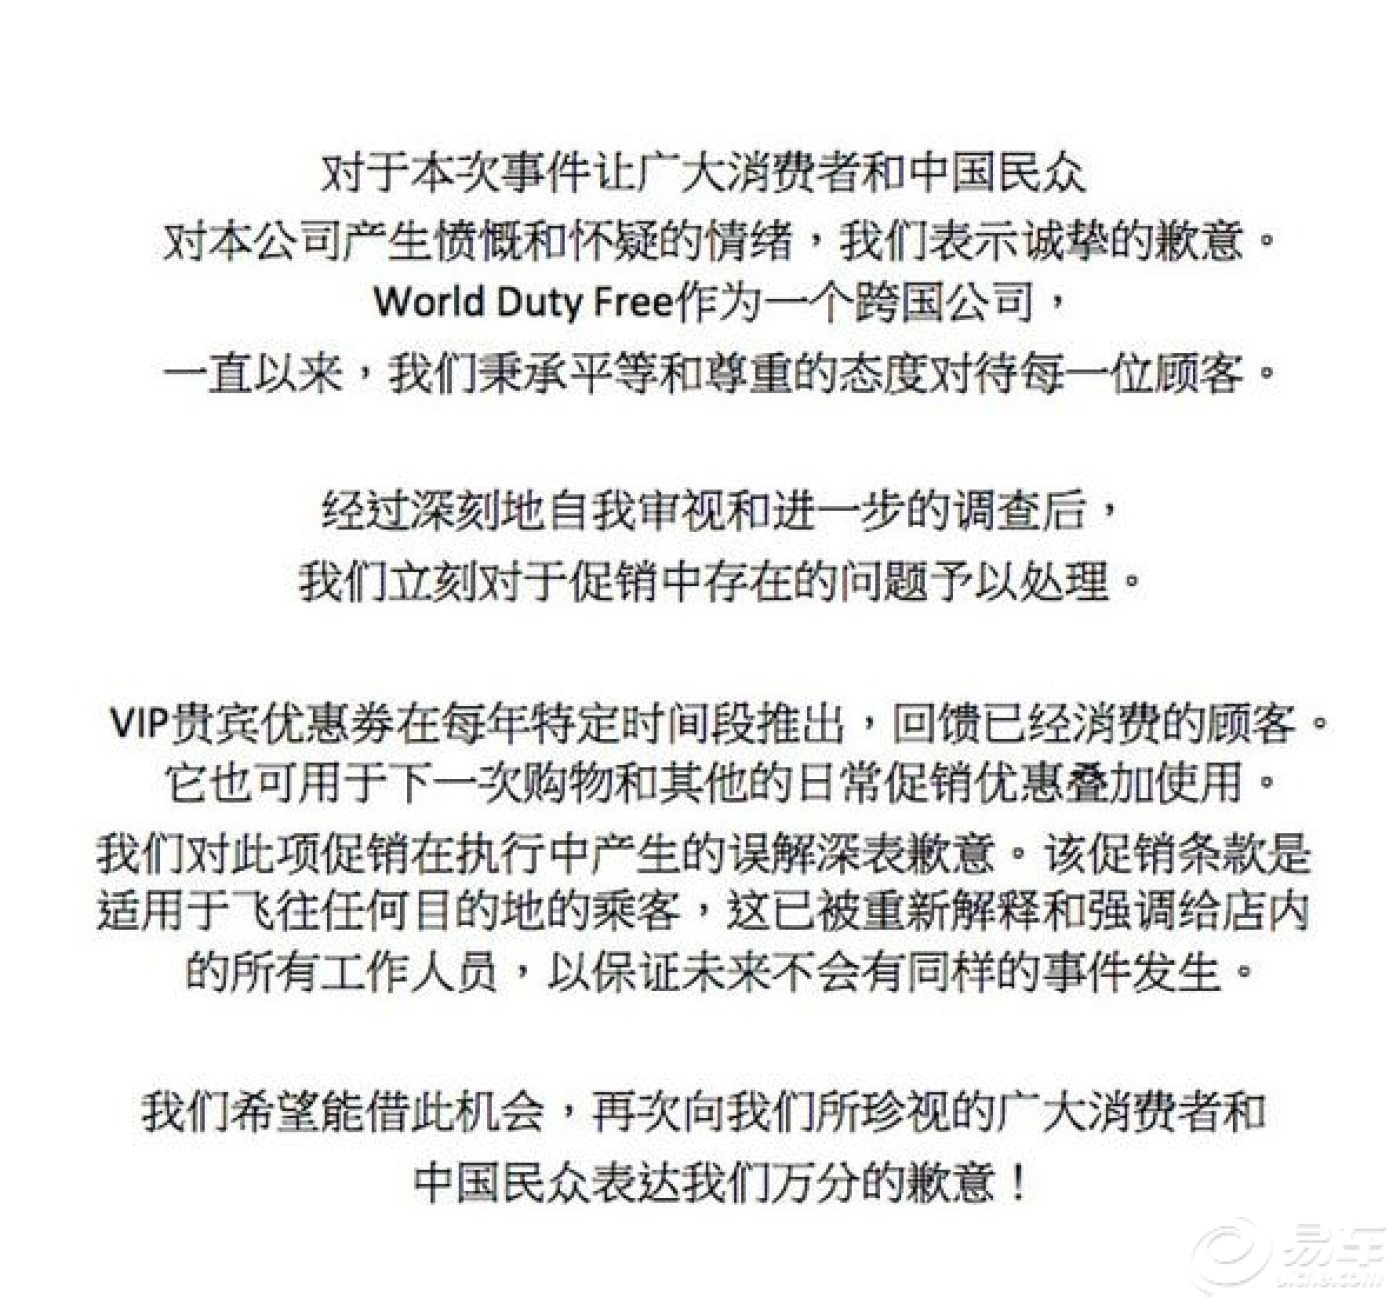 凤凰:希思罗机场免税店致歉声明:对中国民众表